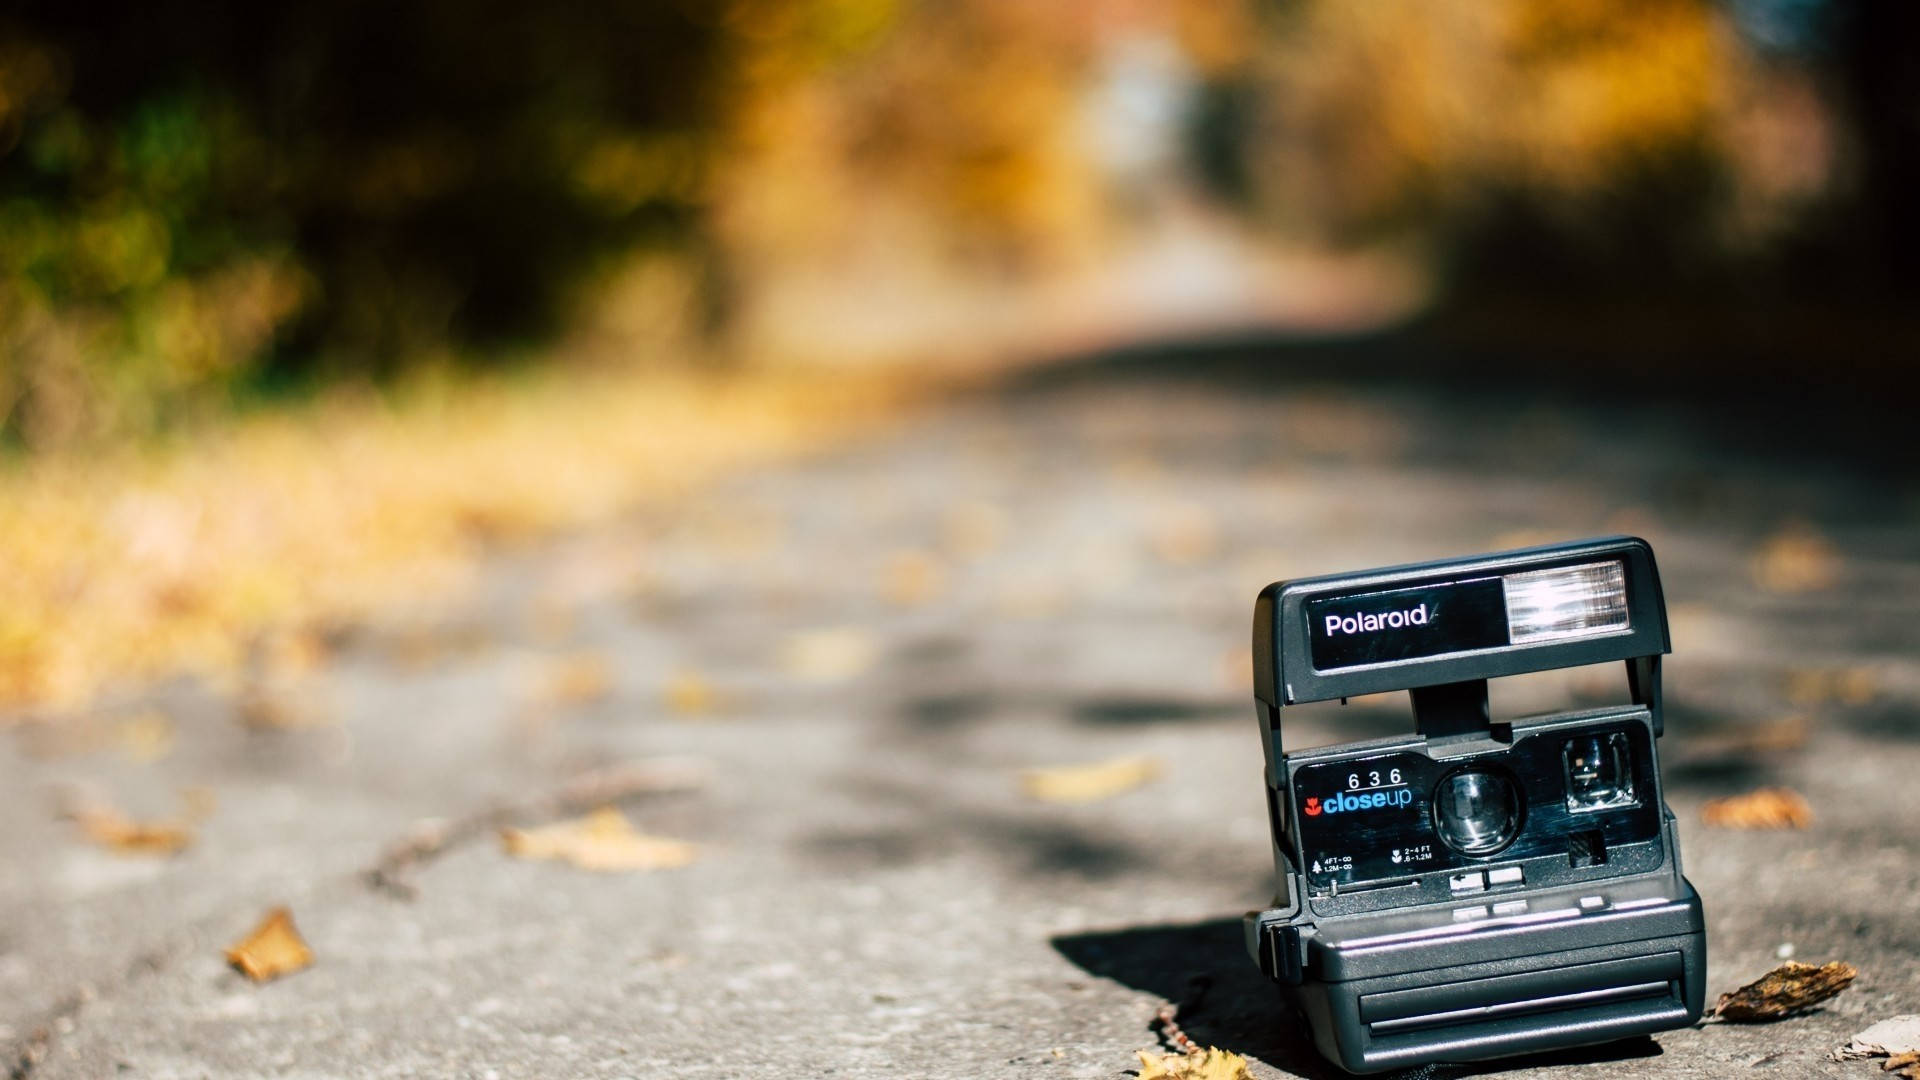 Polaroid Camera On The Road